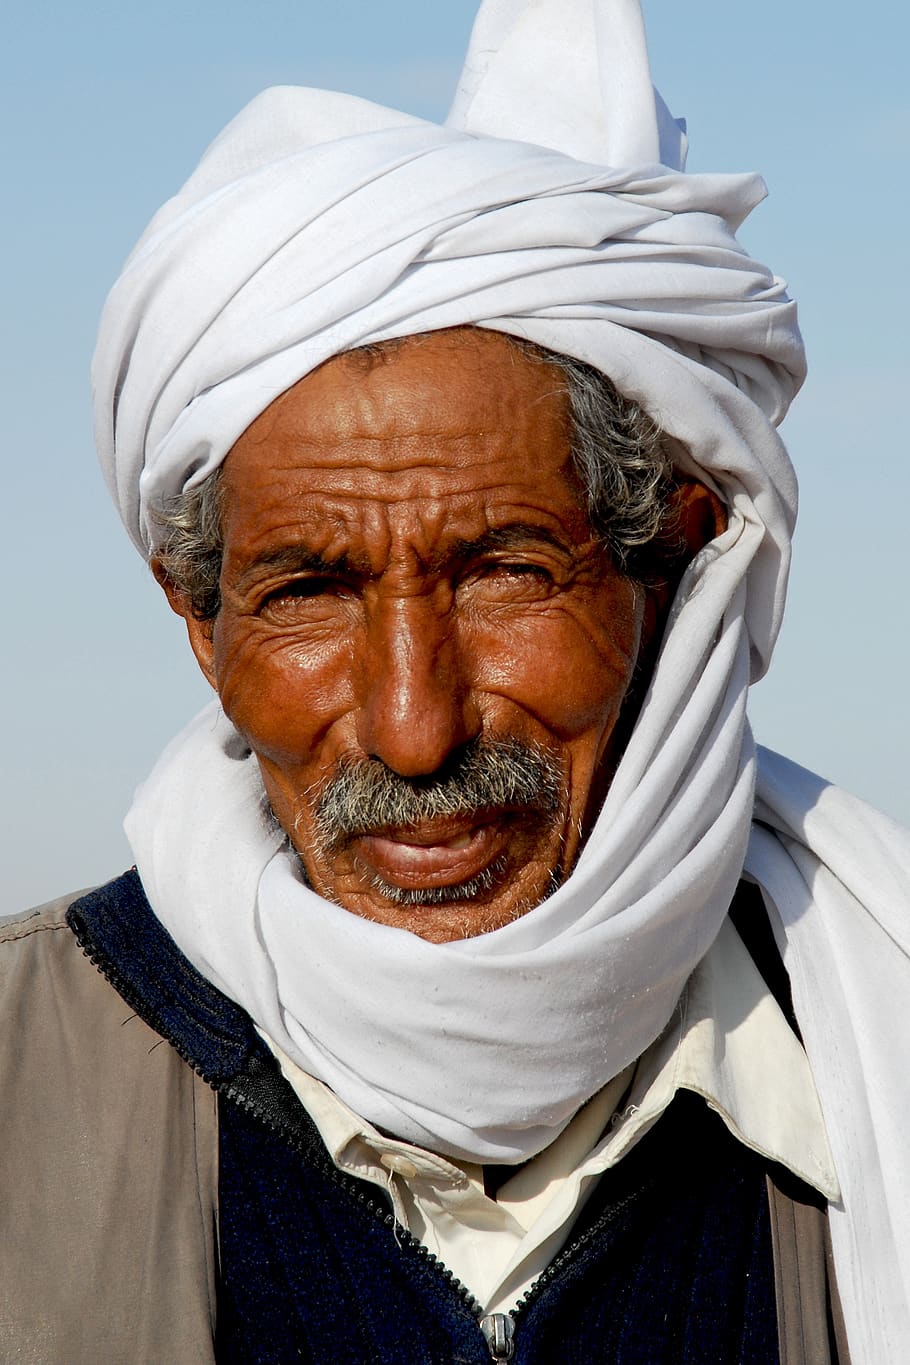 Túnez, nómada, beduino, retrato, cara, sombreros, turbante, doble, viejo, una persona